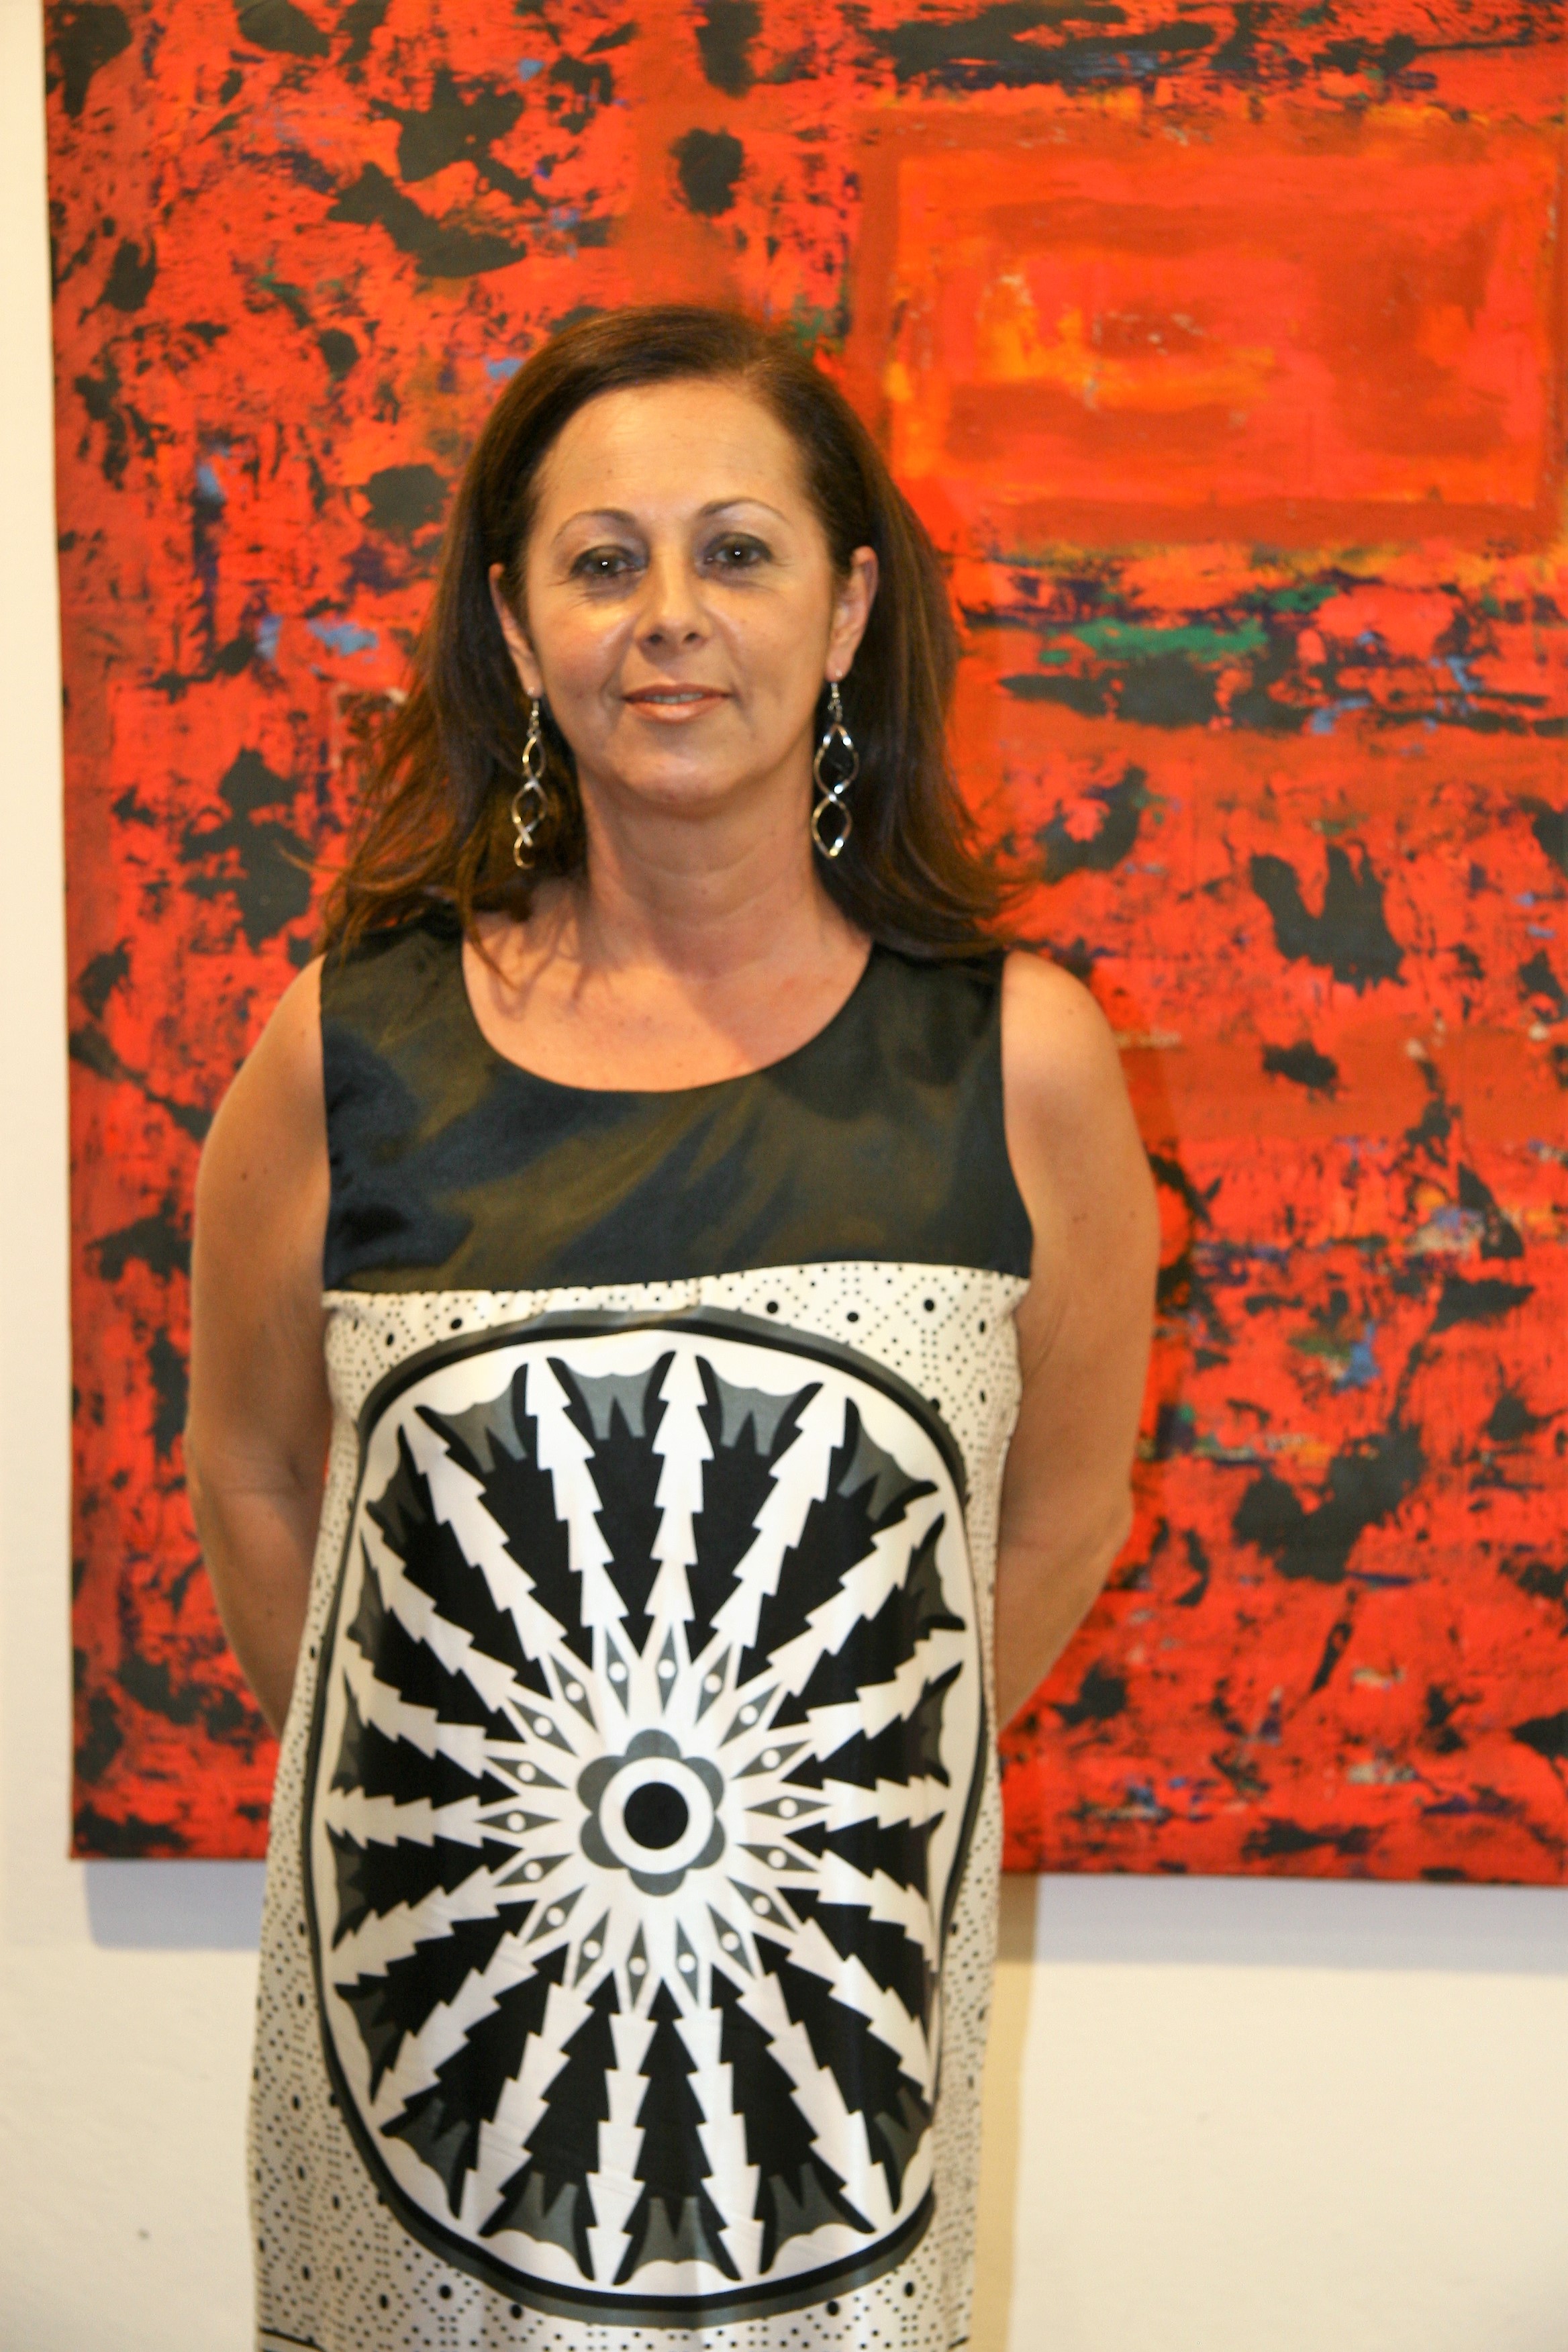 تحت رعاية صاحبة السمو الملكي الأميرة رحمة بنت الحسن ذا كورنر The Corner ضمن مشروع كامبل غراي ليڤينغ عمّان" يستضيف أول معرض منفرد للفنانة التشكيلية البرازيلية إيفانا بانيزي